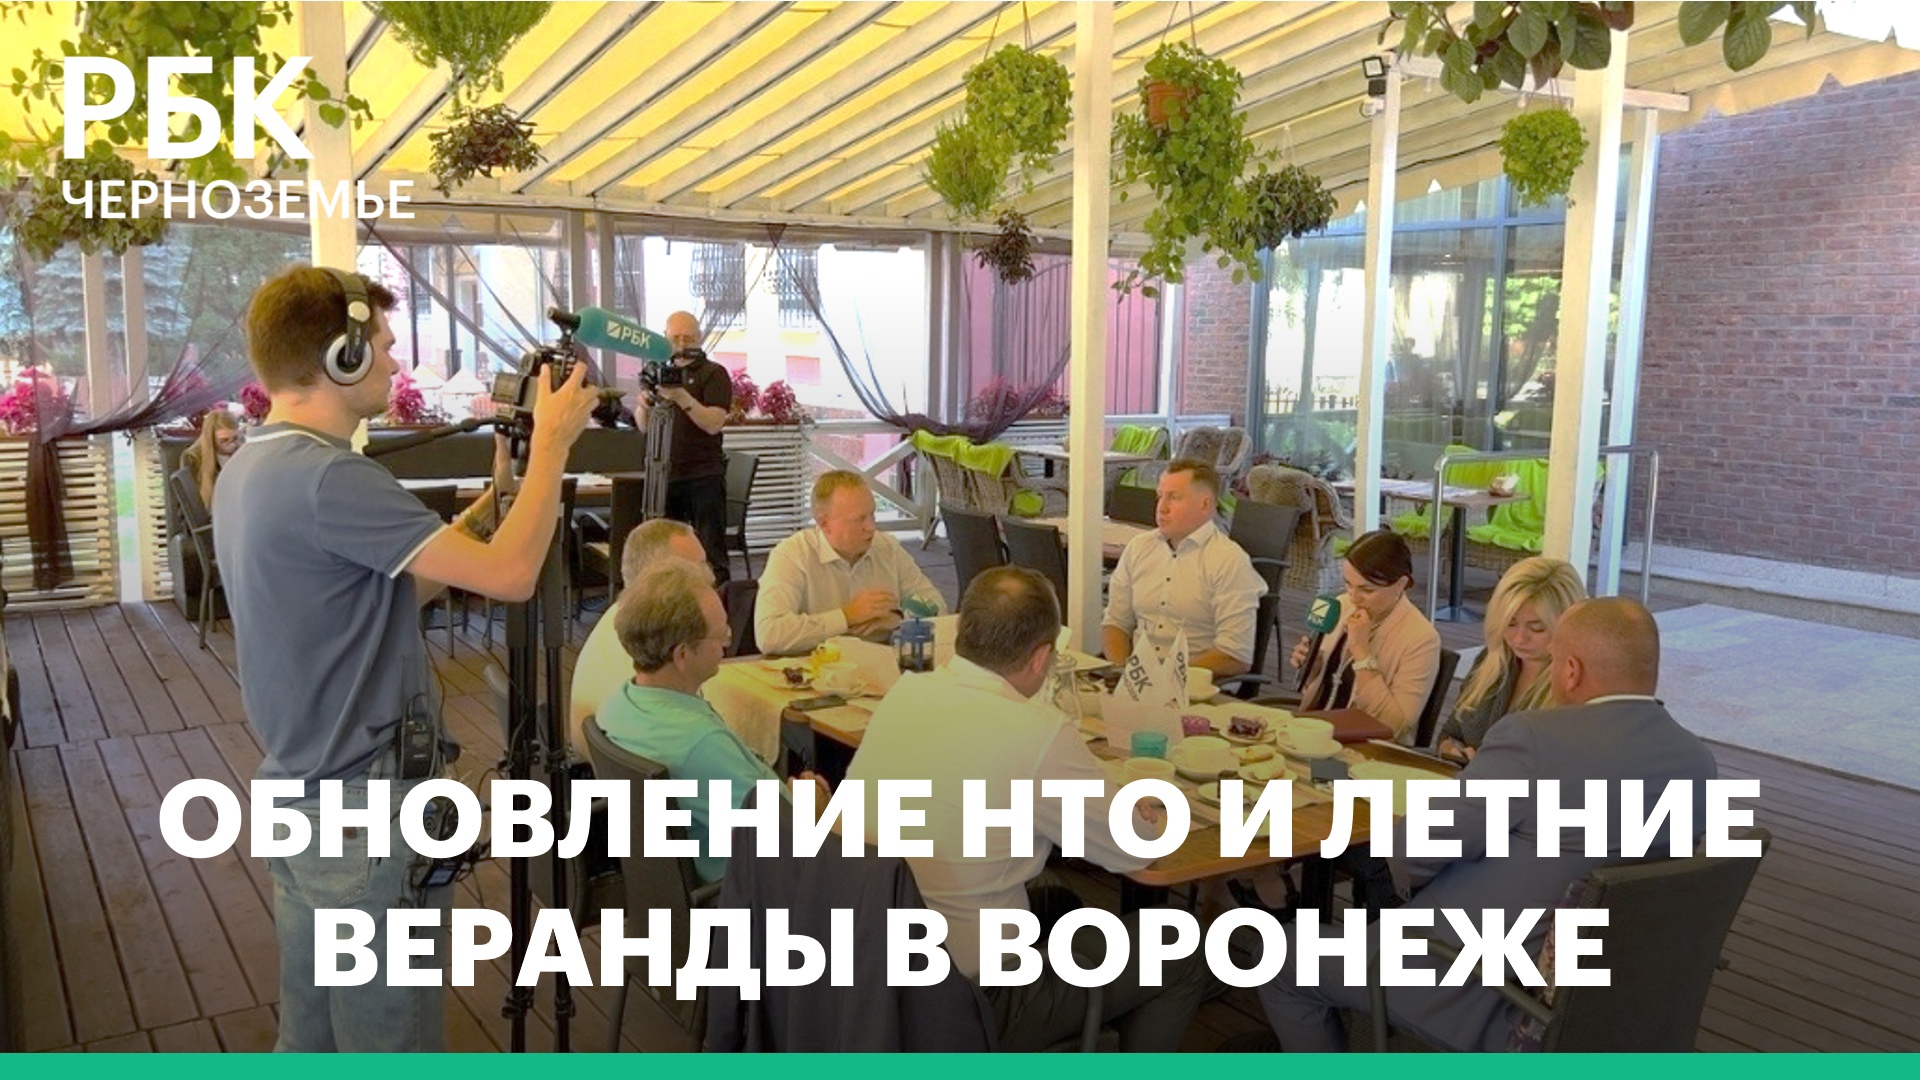 В Воронеже предприниматели должны были обновить 80% нестационарных торговых объектов к 1 сентября